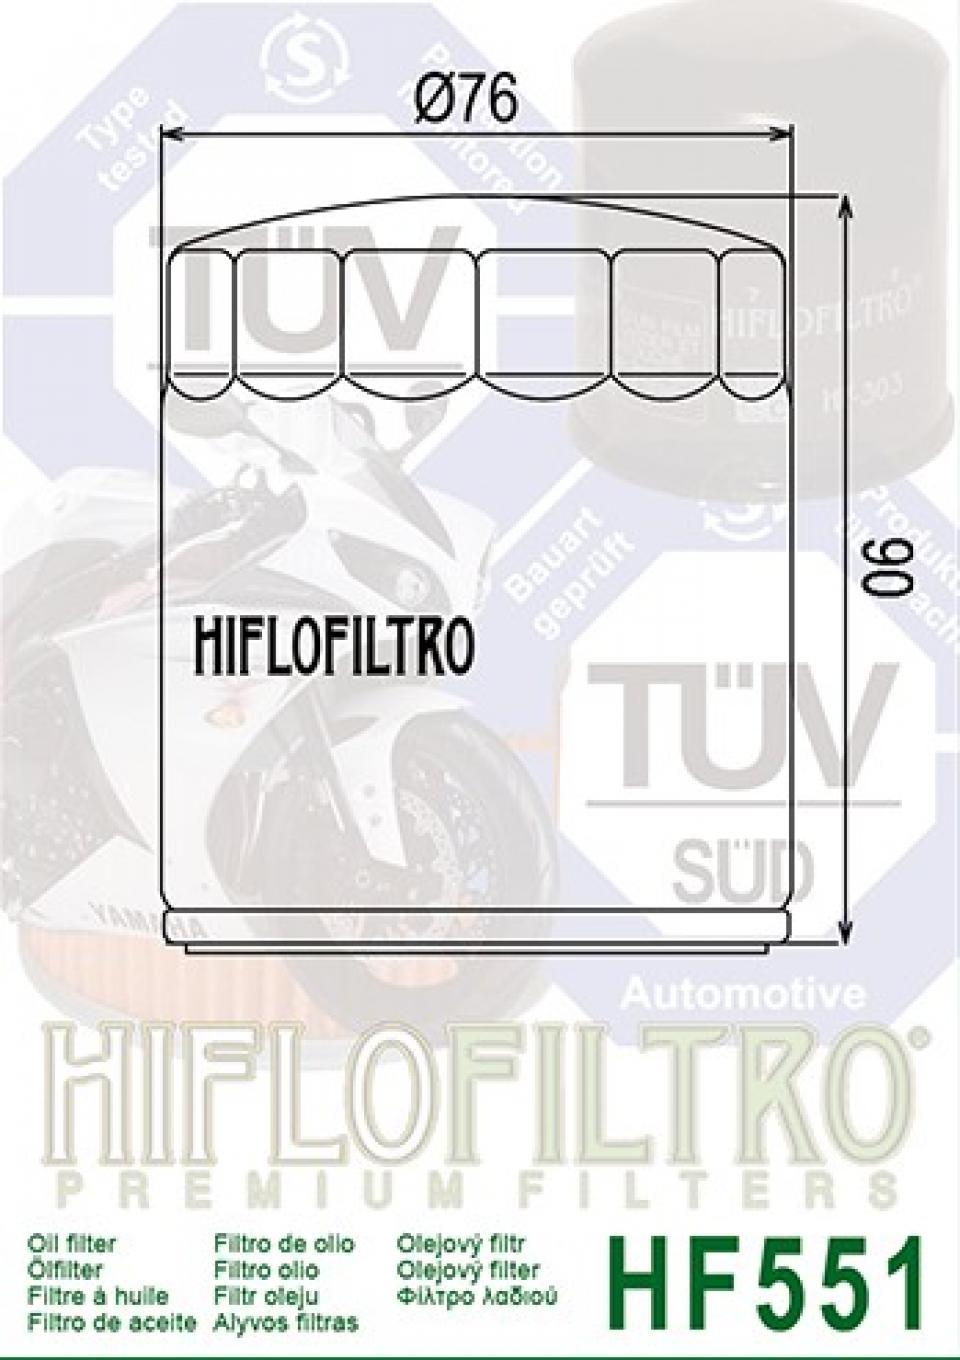 Filtre à huile Hiflo Filtro pour Moto pour Moto GUZZI 940 Bellagio 2007-2014 Neuf